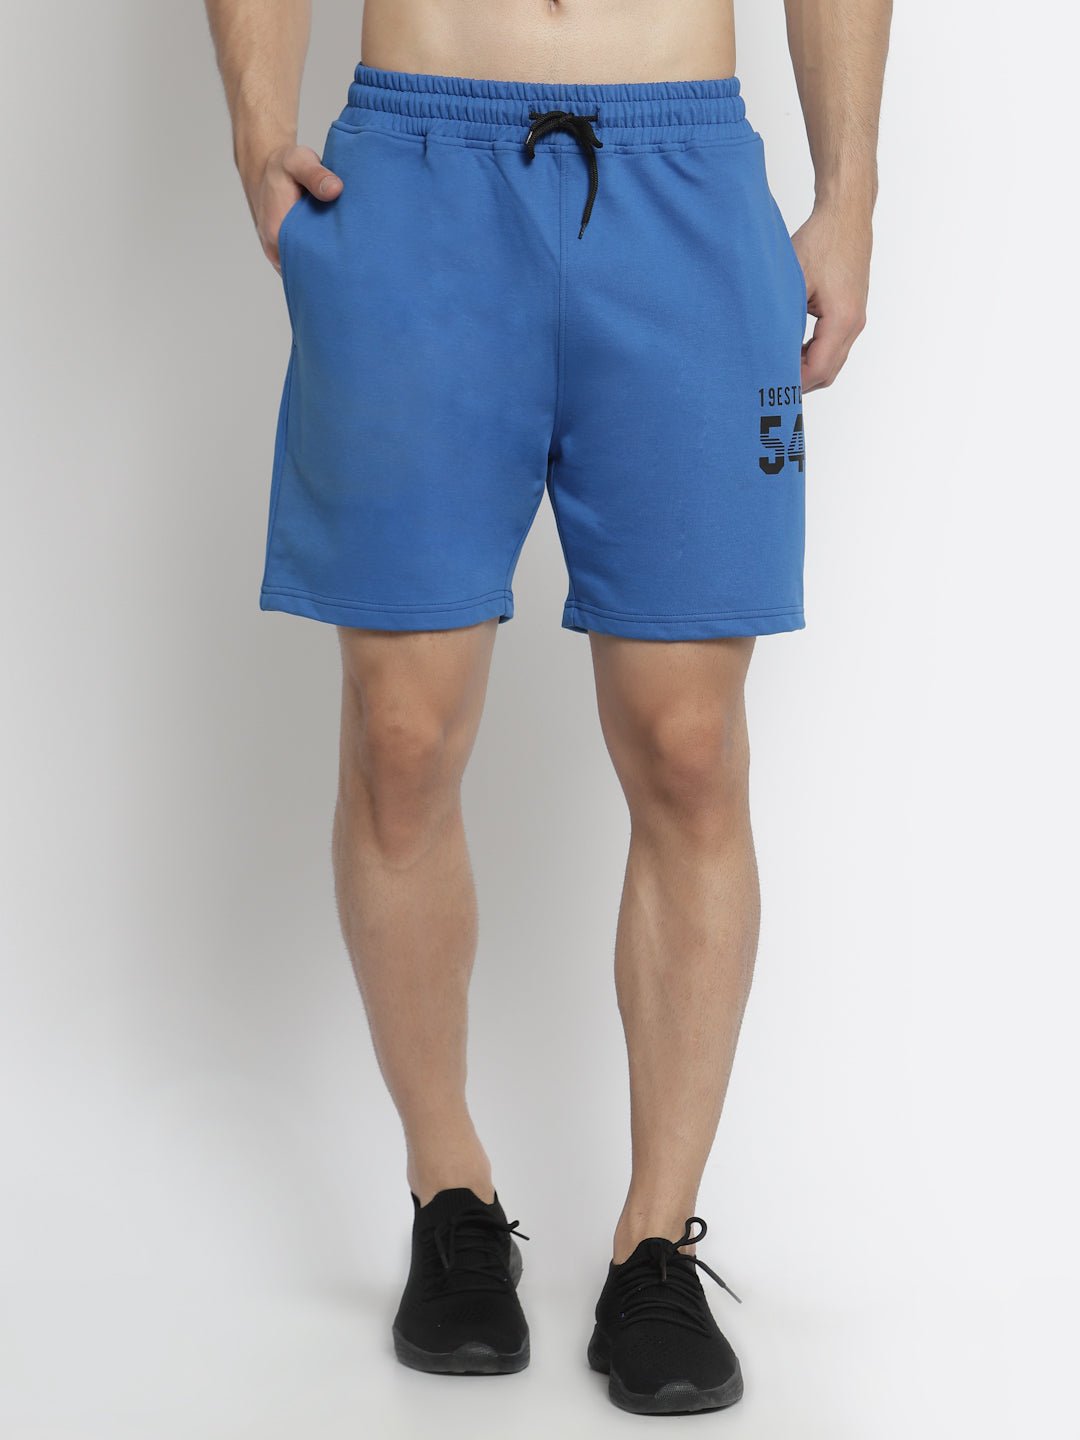 Royal Blue Shorts - clubyork